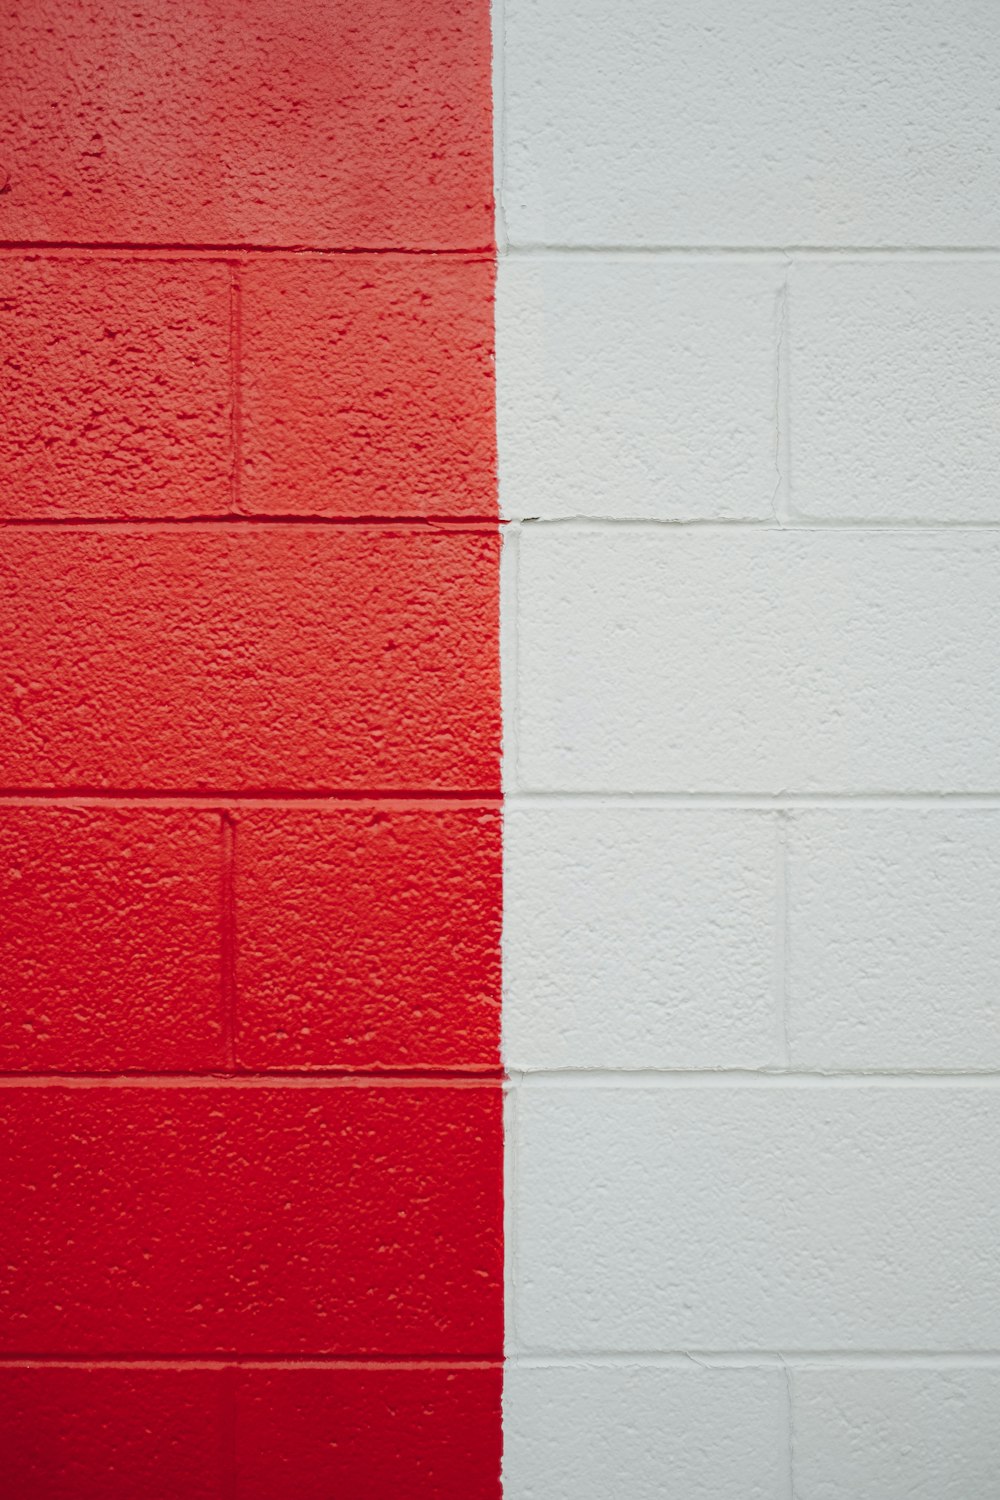 uma parede vermelha e branca com uma faixa vermelha e branca